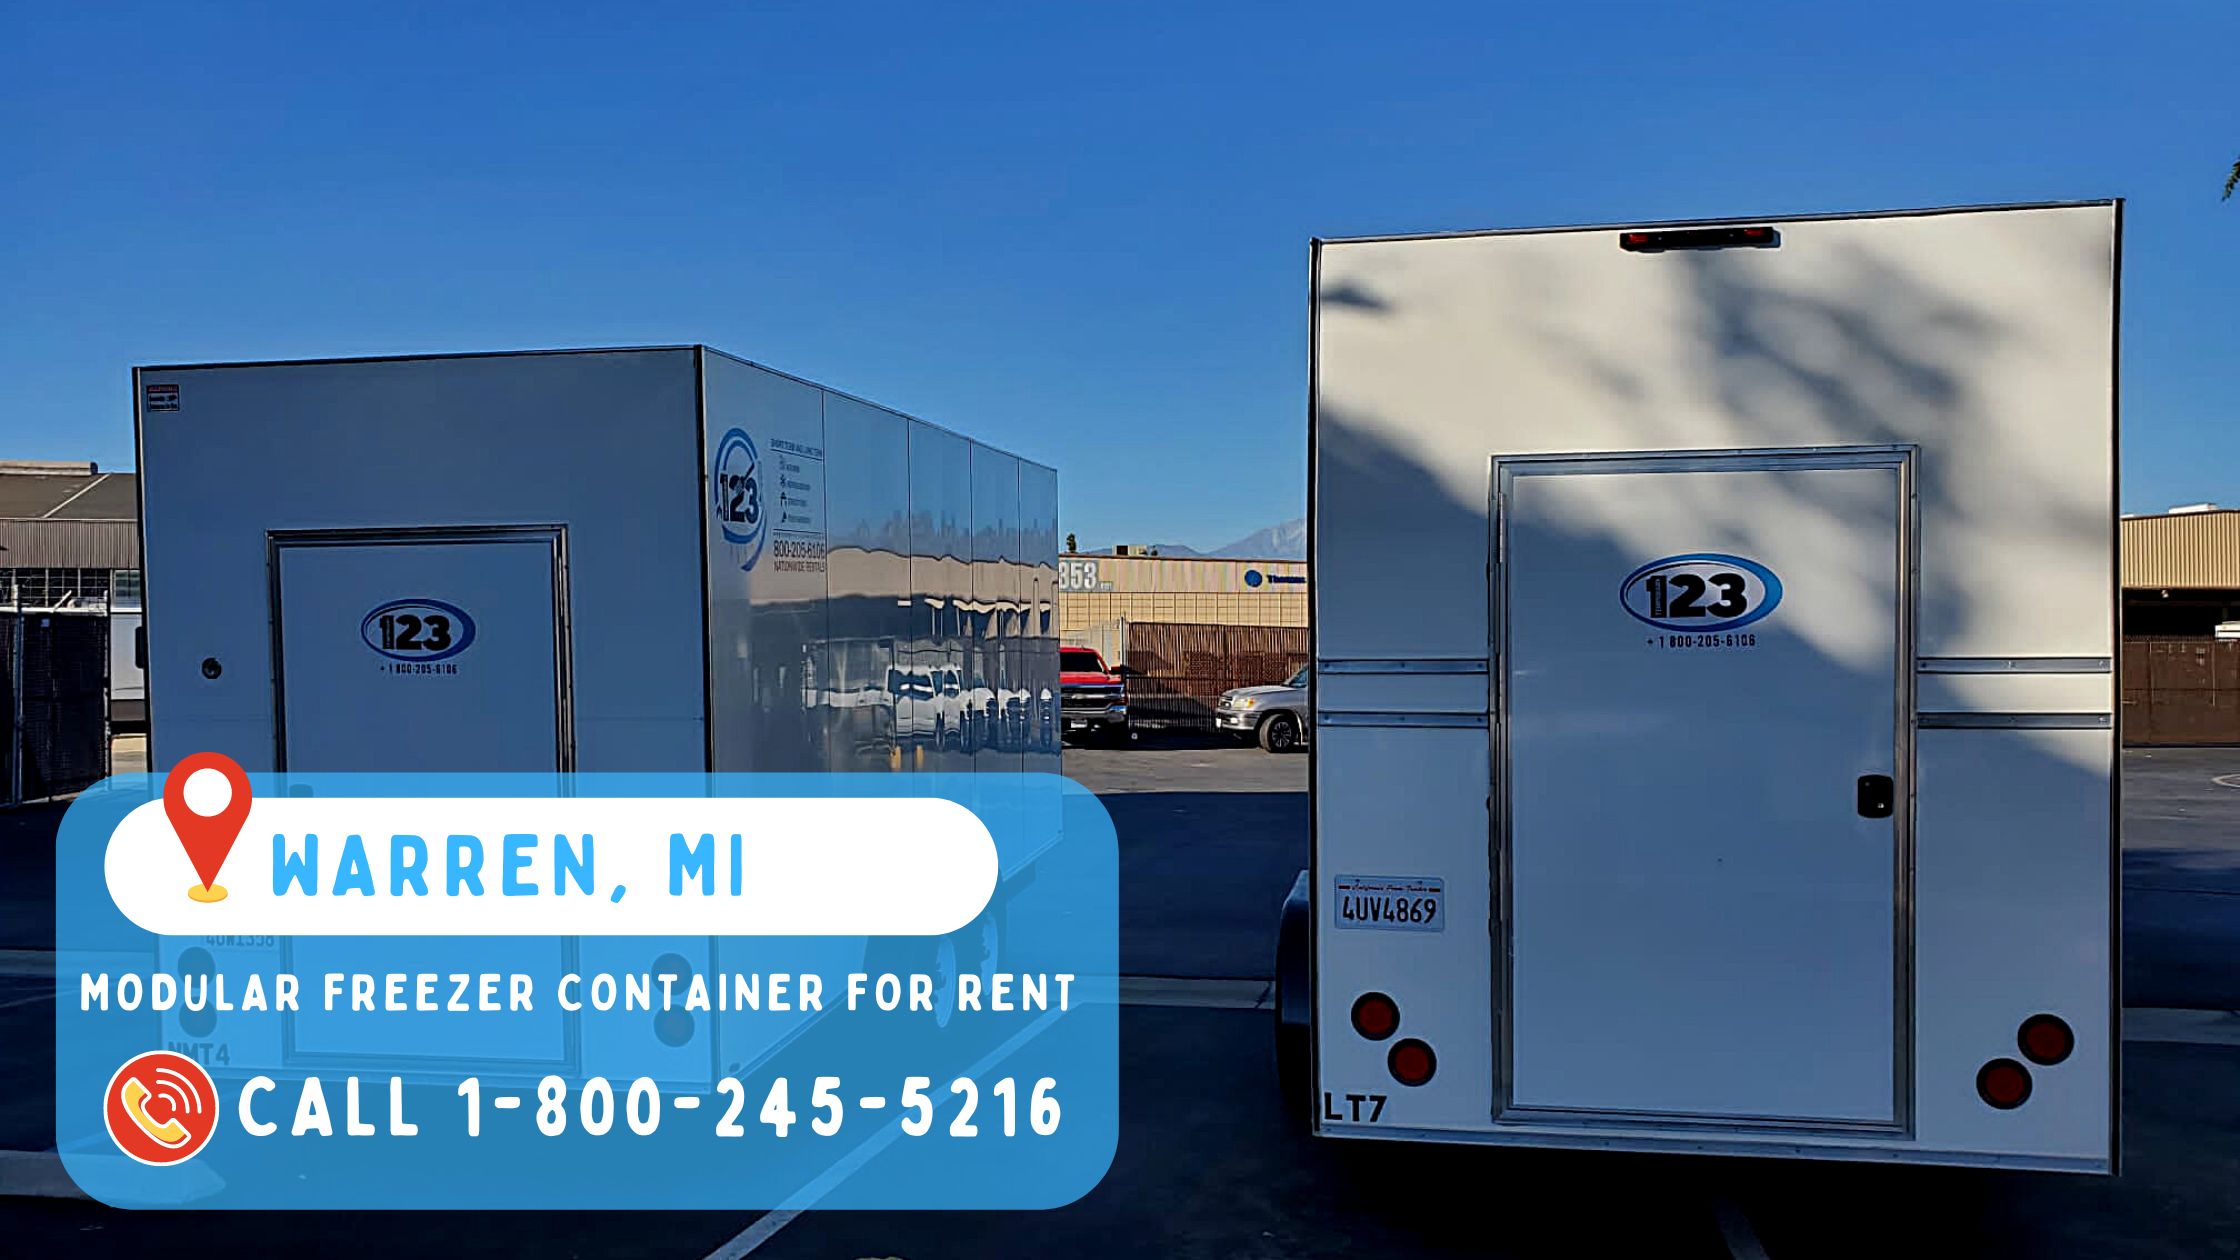 Modular freezer container for rent in Warren